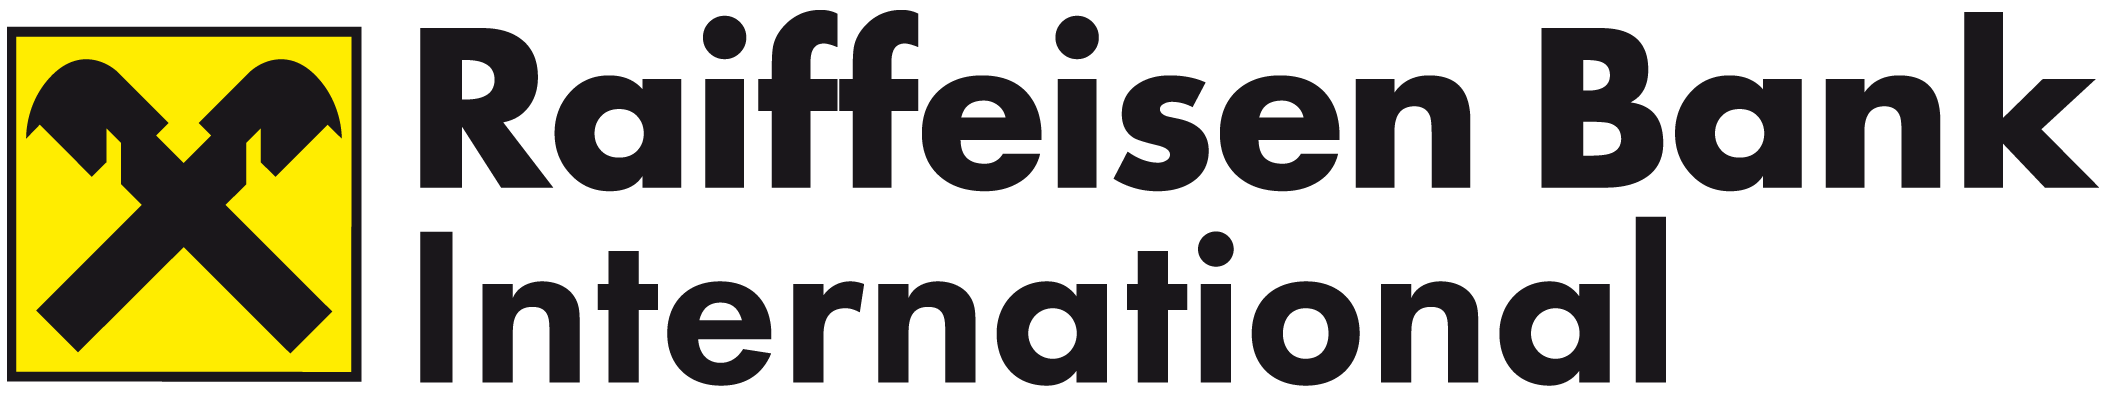 Raiffeisen bank logo